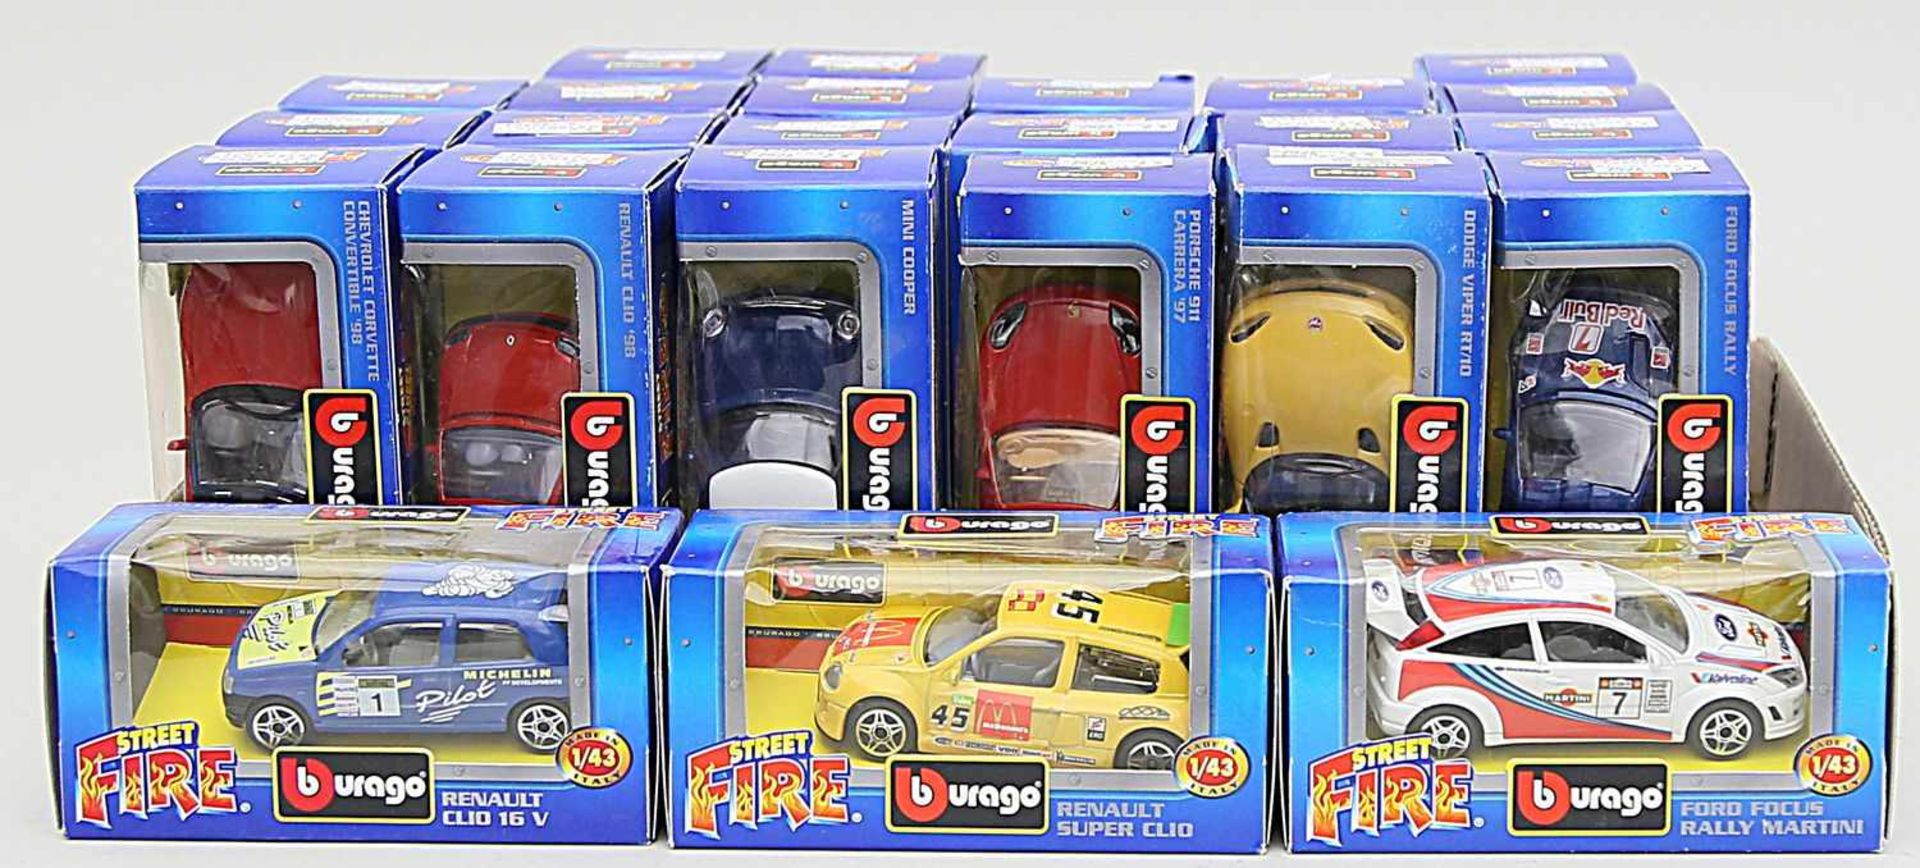 24 Spielzeugautos, Burago, 1:43.Verschiedene Modelle aus der "Street Fire Collection". Je in